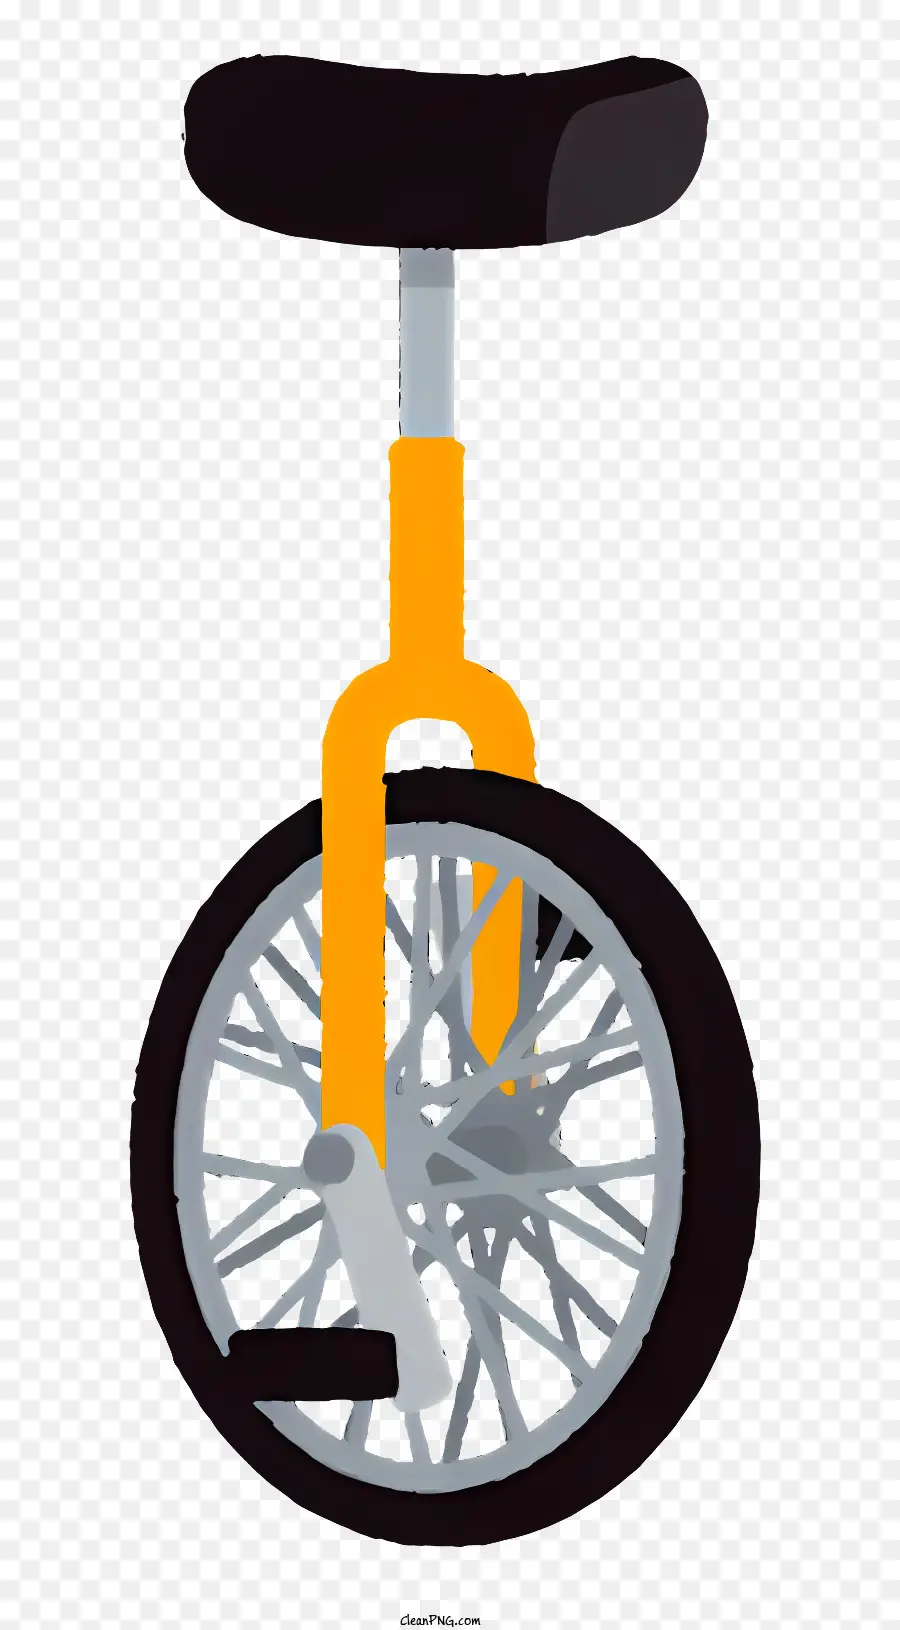 Fahrrad Einradfahrrad mit einem Rad Silhouette - Silhouette eines Einrads mit reflektierender Gummireifen